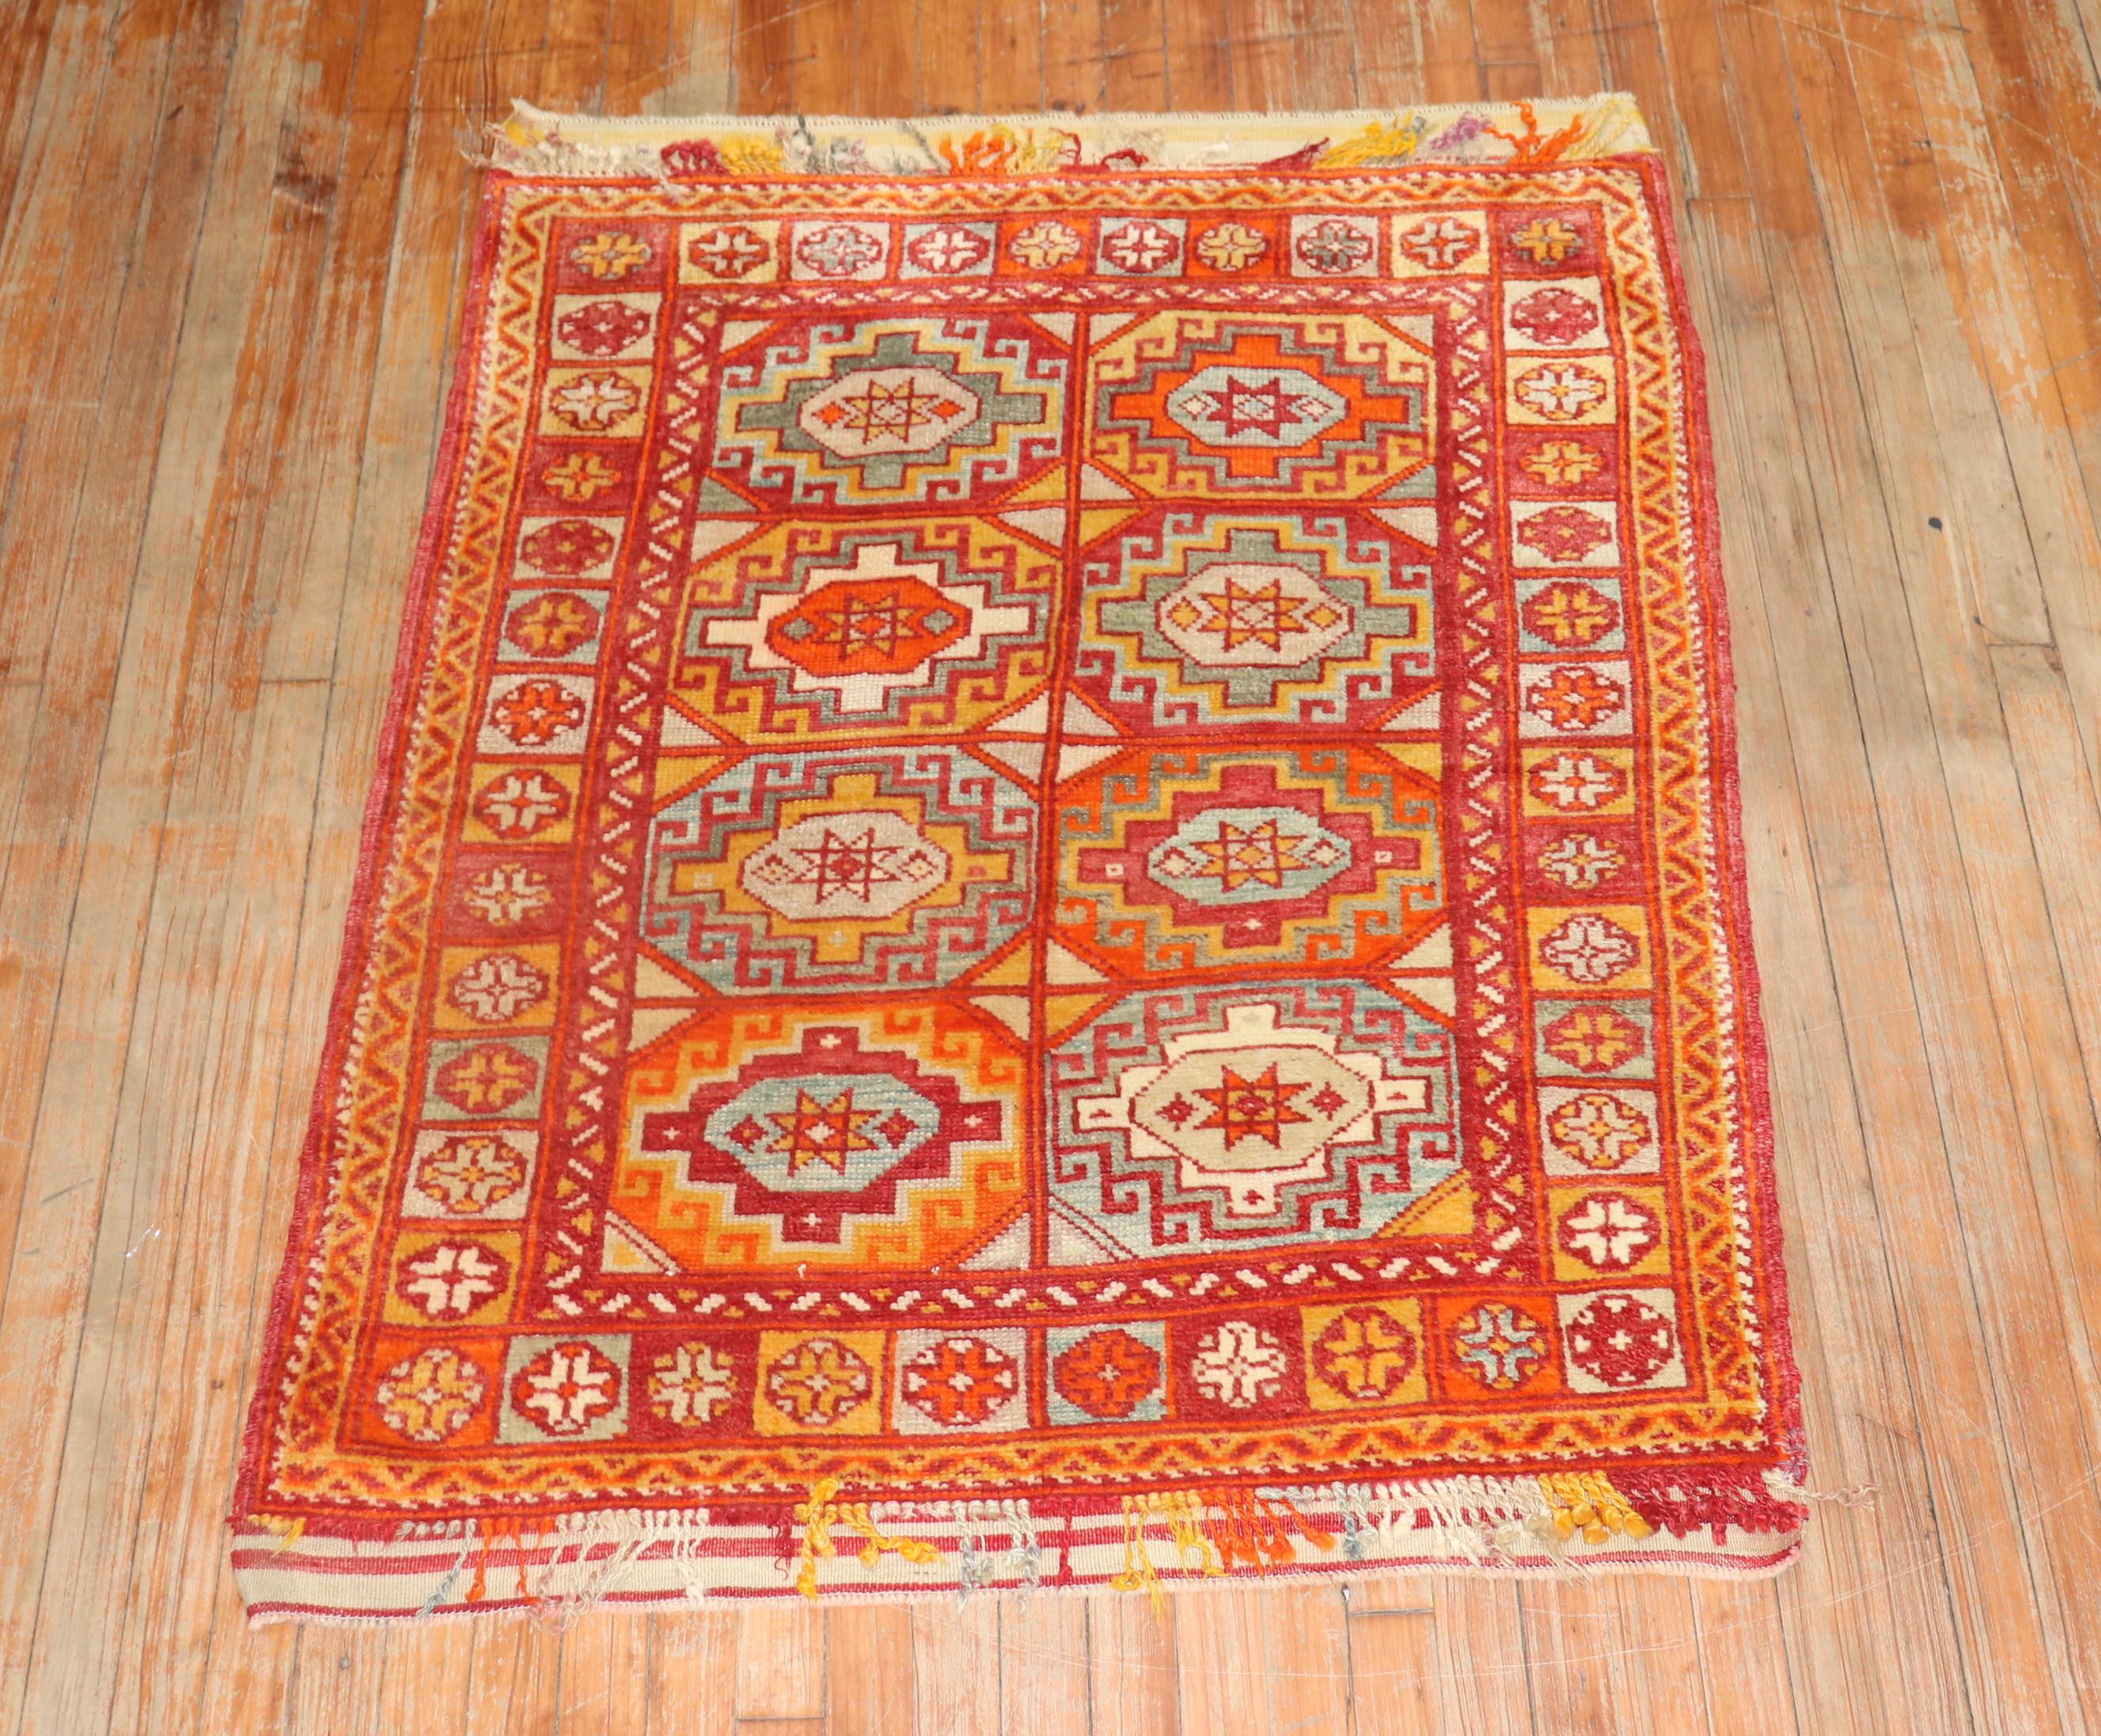 Leuchtende Farben unterstreichen diesen türkischen Bergama-Teppich aus dem frühen 20

Maße: 3'6